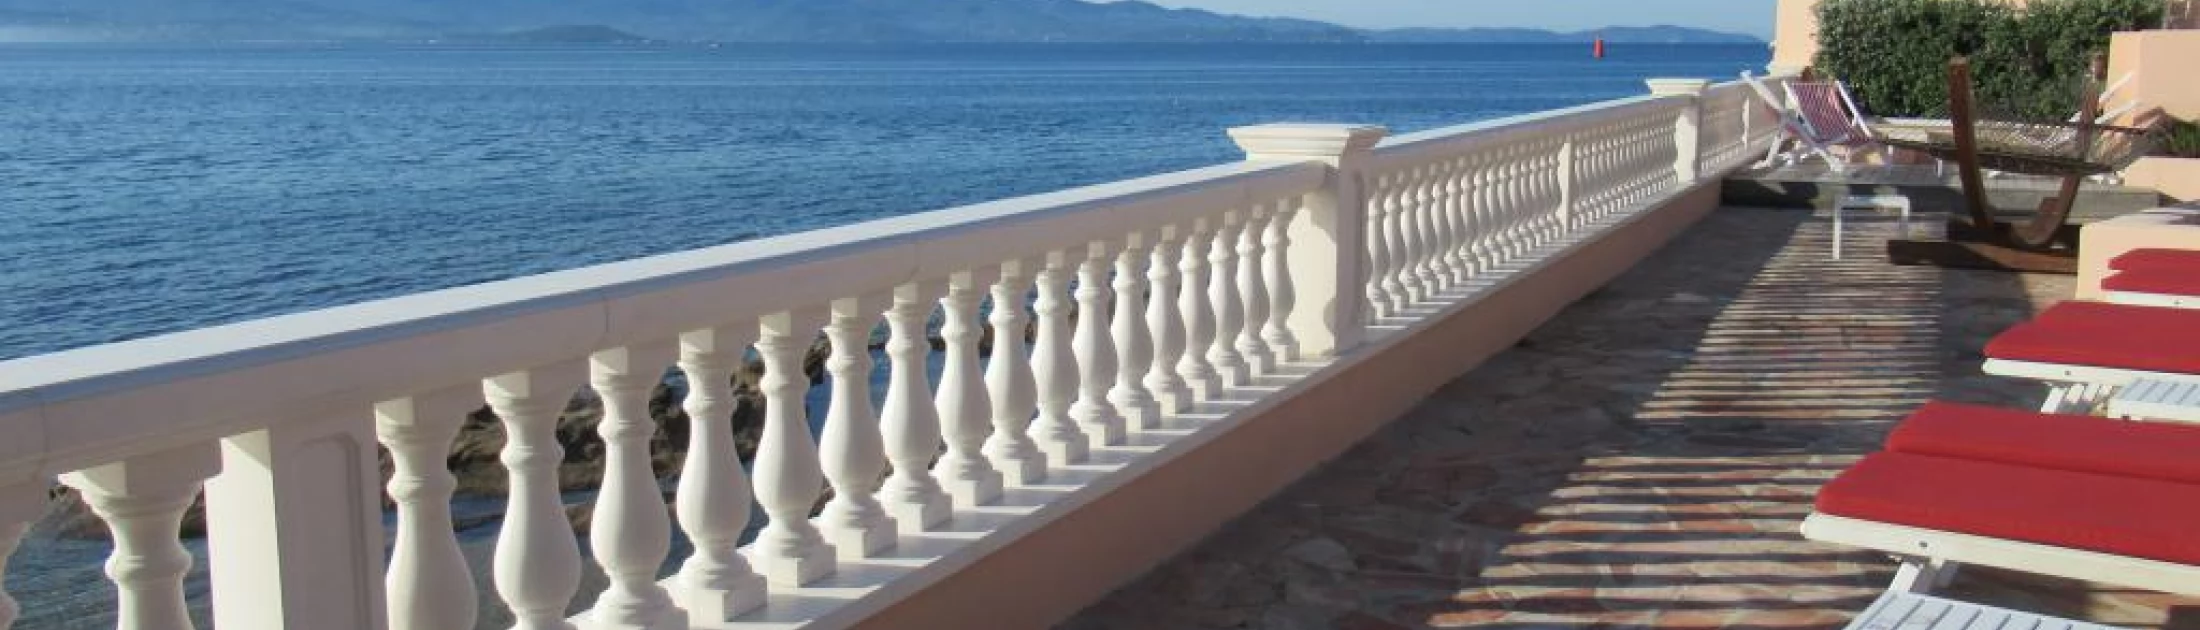 Réalisation d'une balustre et d'encadrements muraux dans un hôtel 4 étoiles au bord de mer en Corse